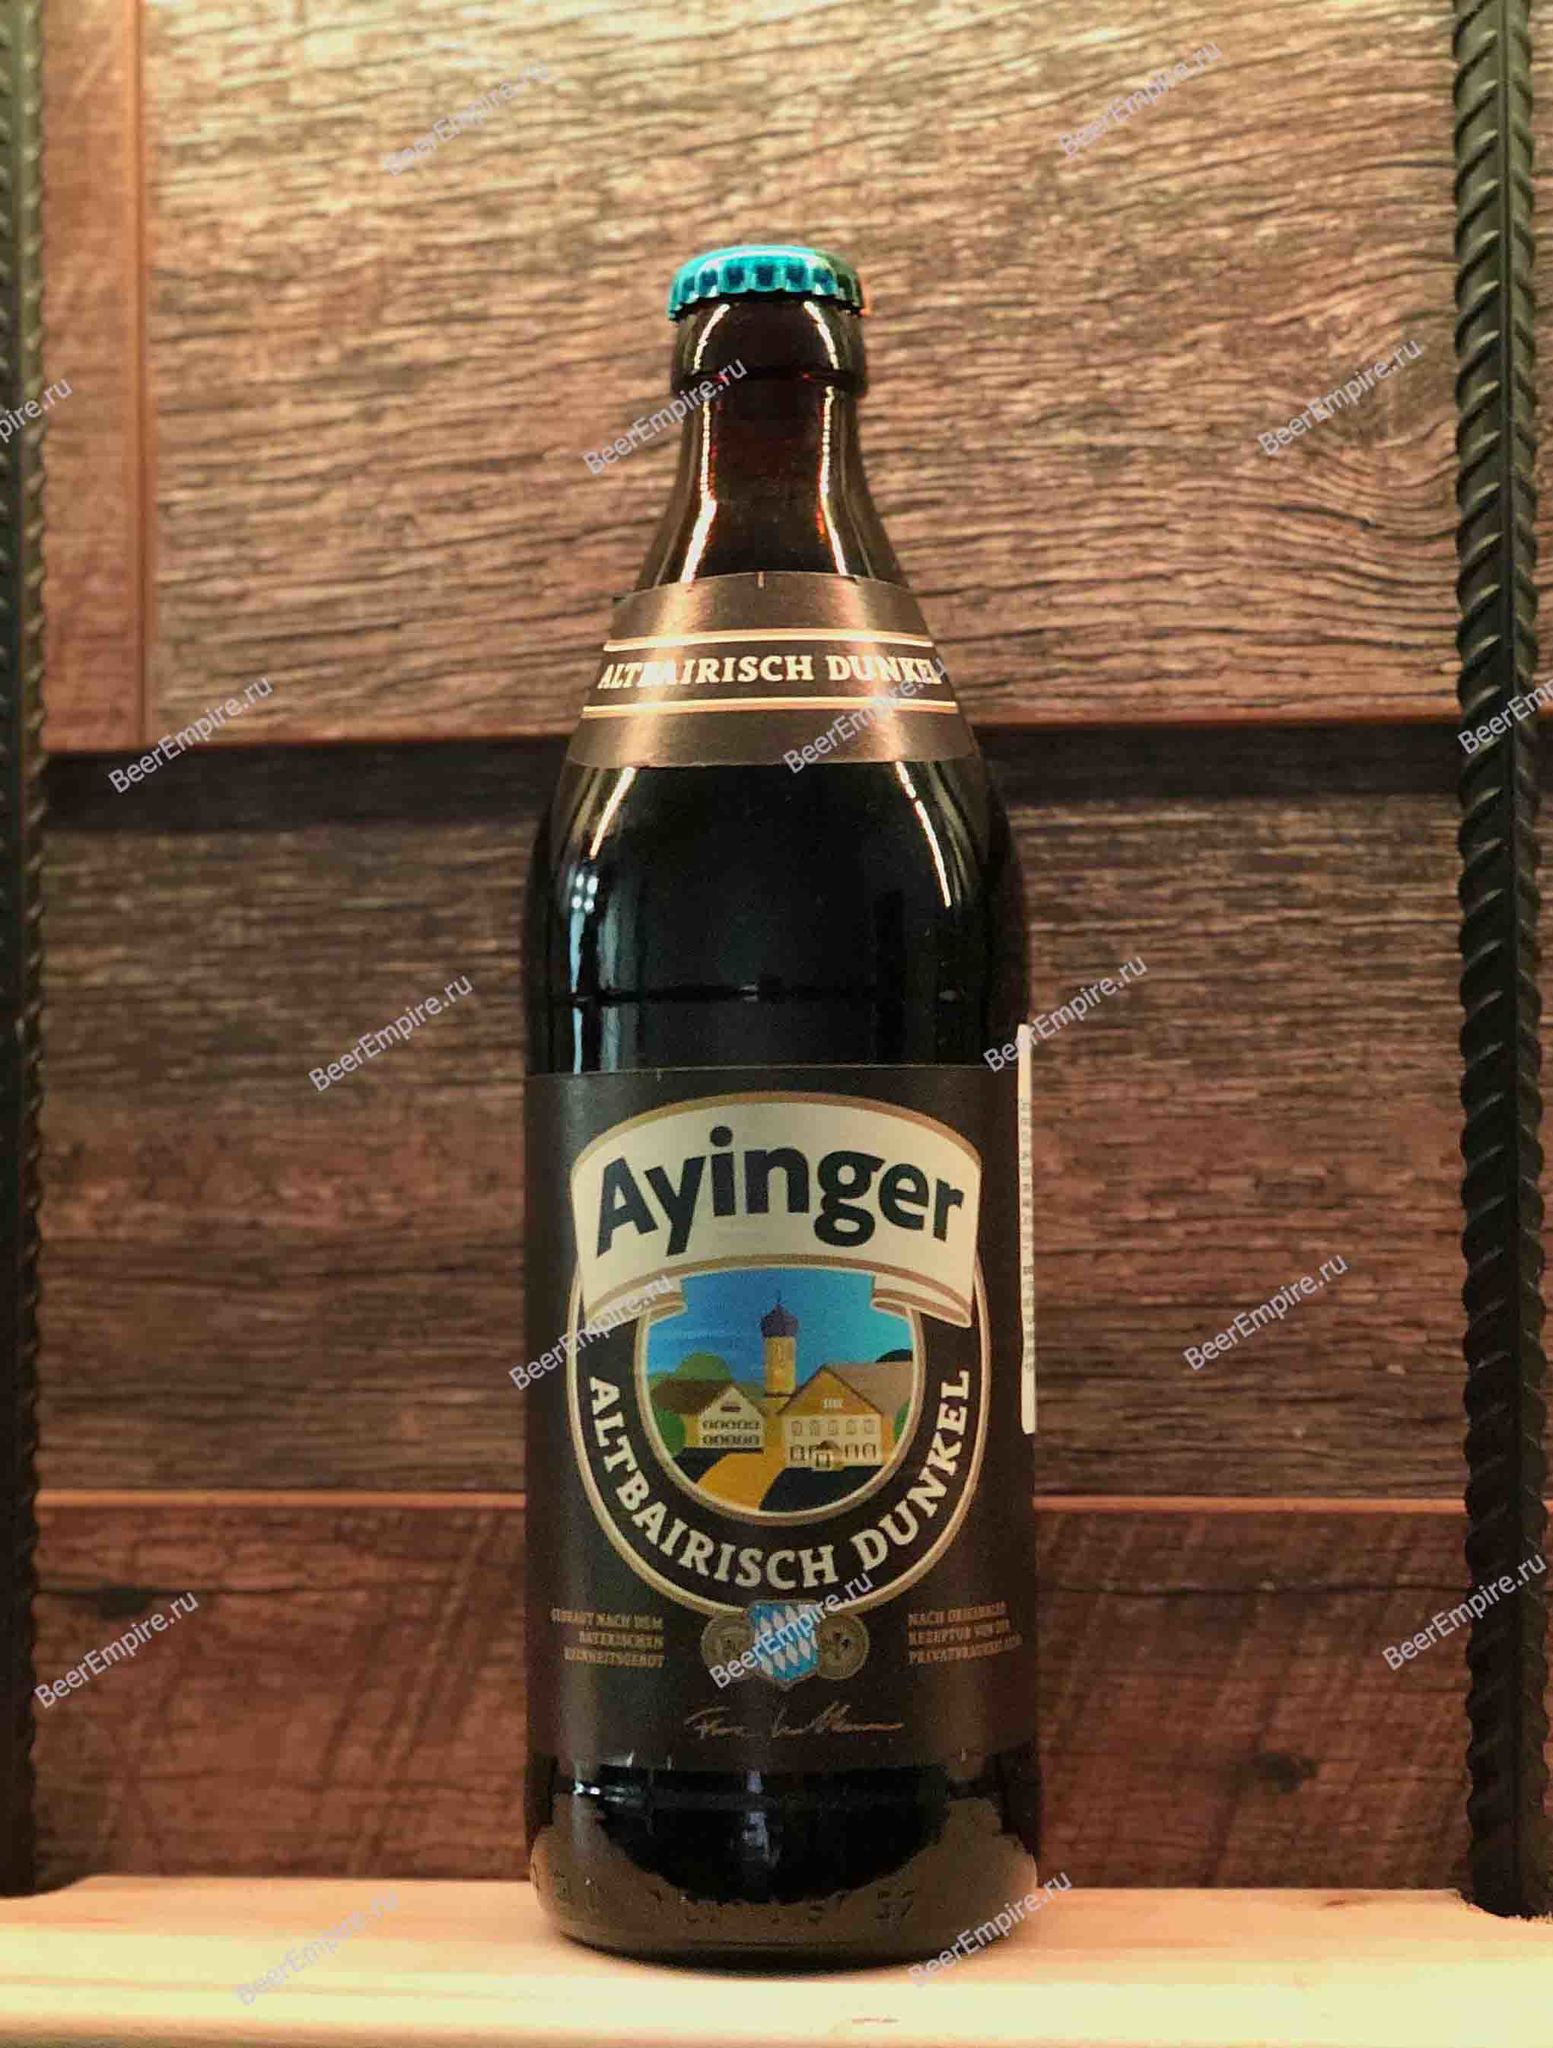 Пиво ayinger купить. Айингер Альтбайриш Дункель. Ayinger dunkel пиво. Пиво Айингер фестмэрцен. Пиво "Айингер Альтбайриш Дункель" темное нефильтр. Ст/б 0,5 290р.